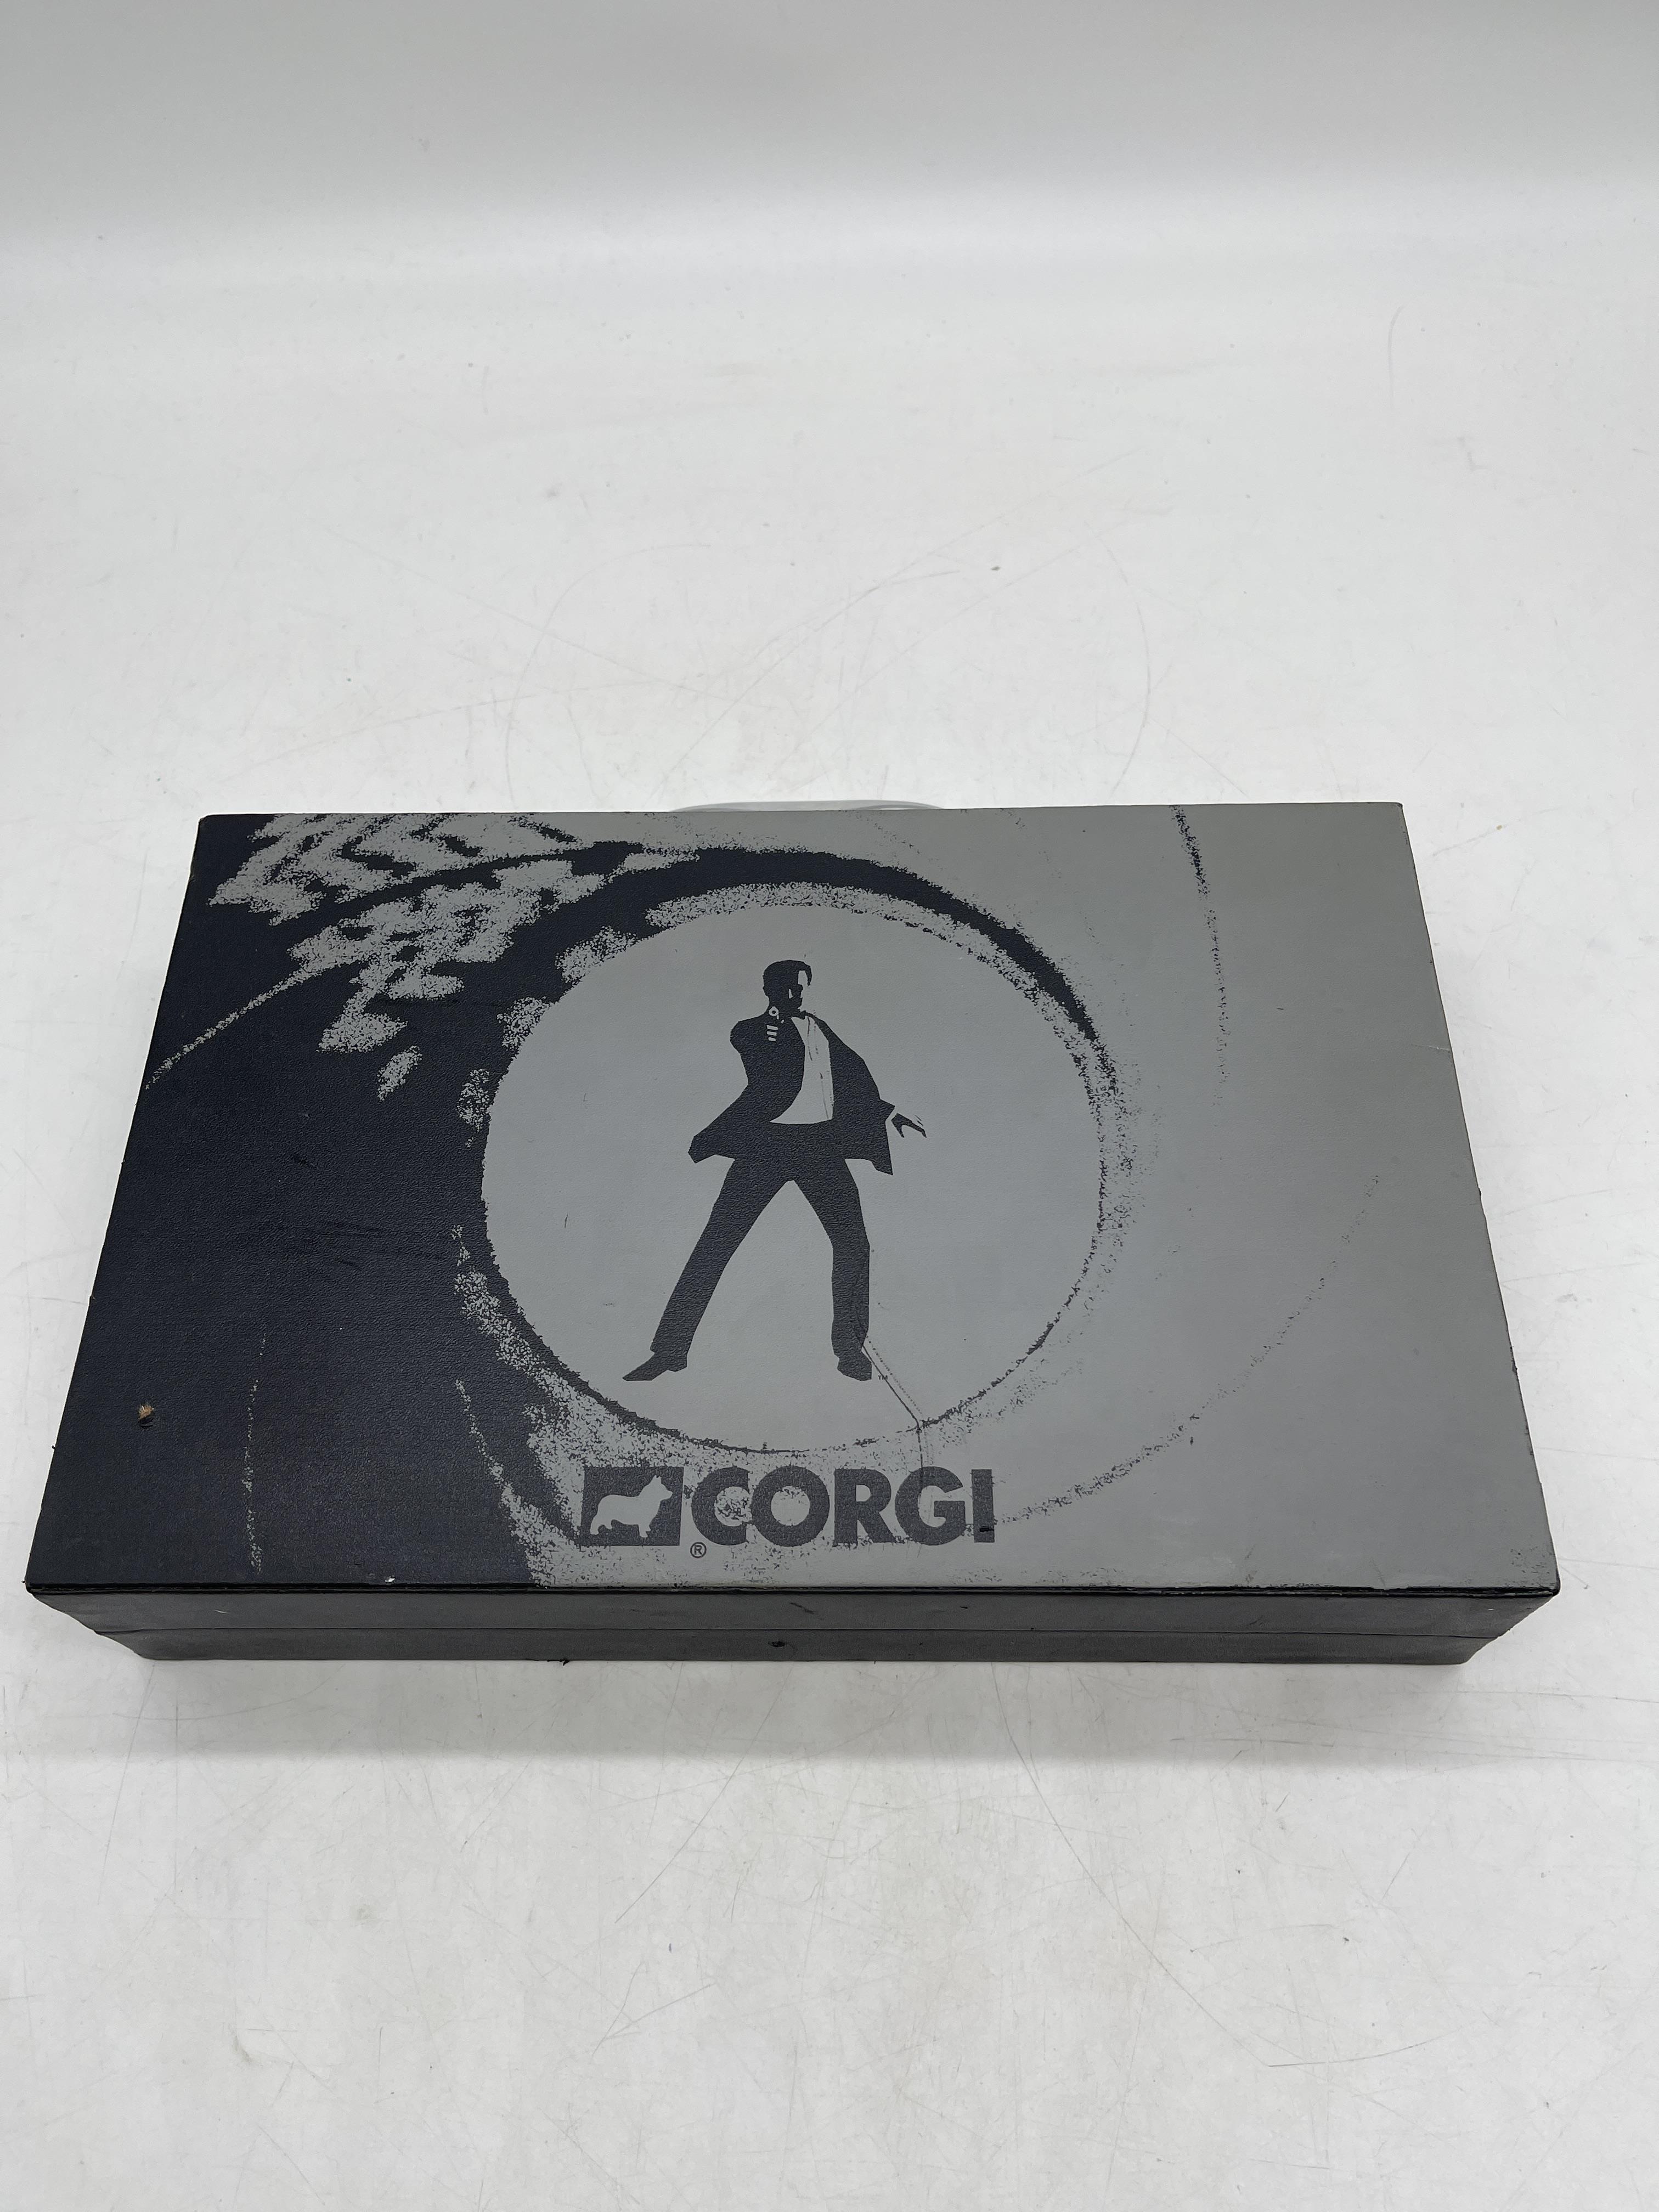 007 Casino Royal Corgi Box Kit - Image 20 of 20